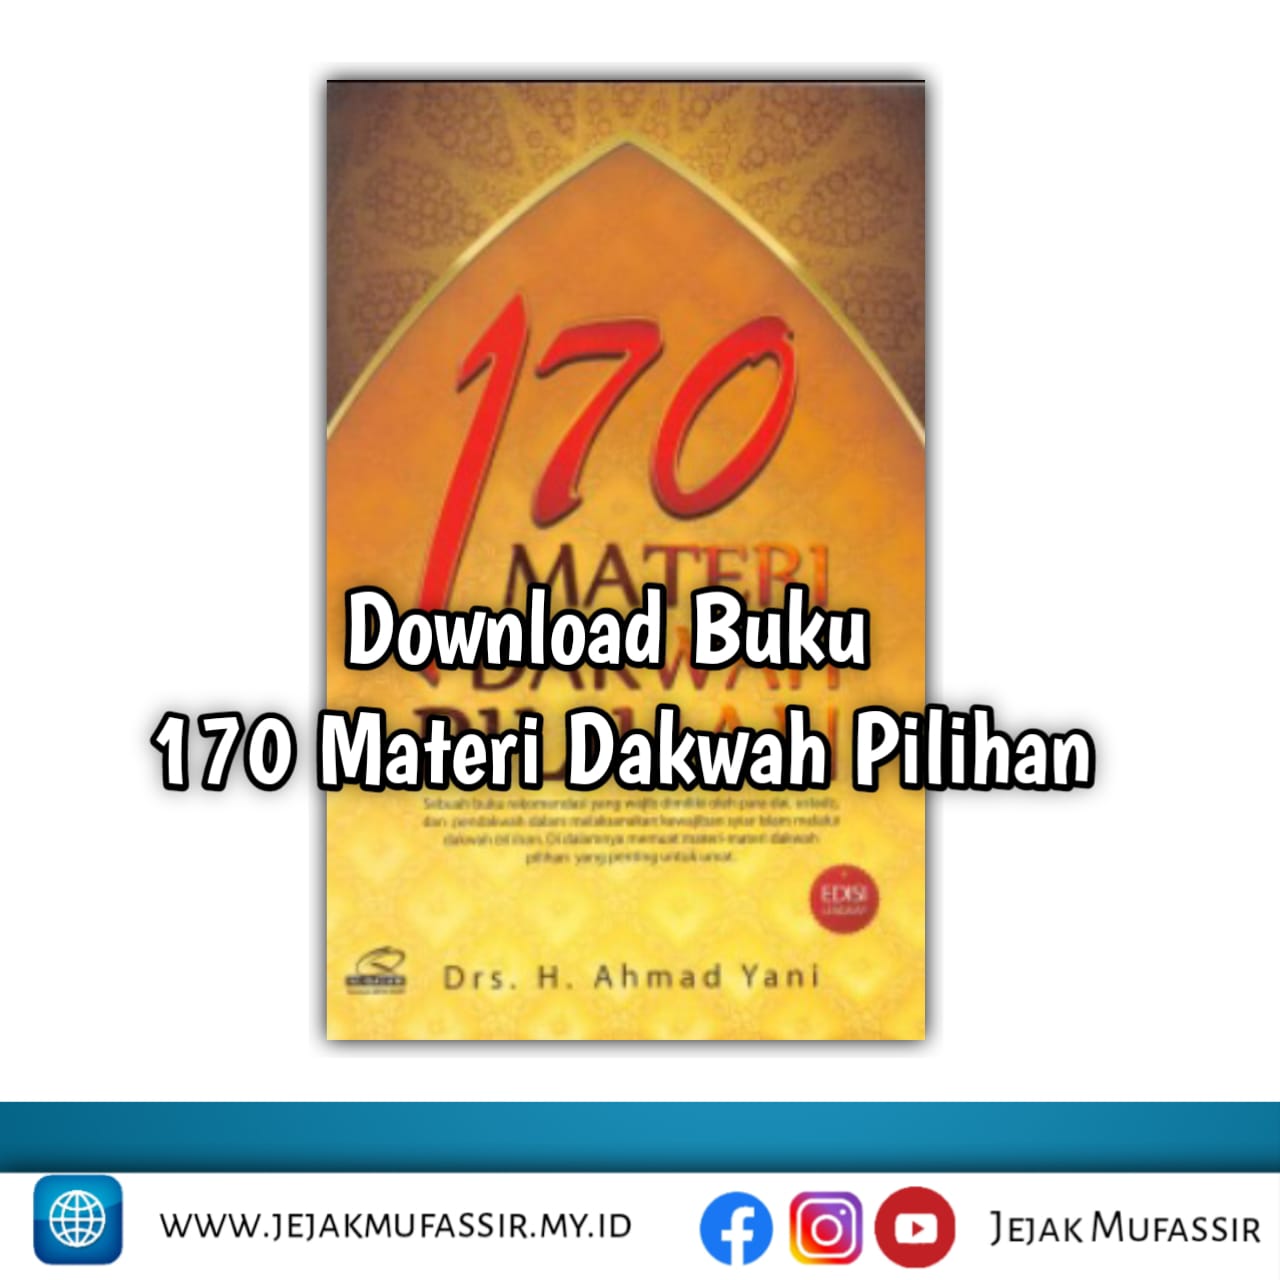 Download Buku 170 Materi Dakwah Pilihan